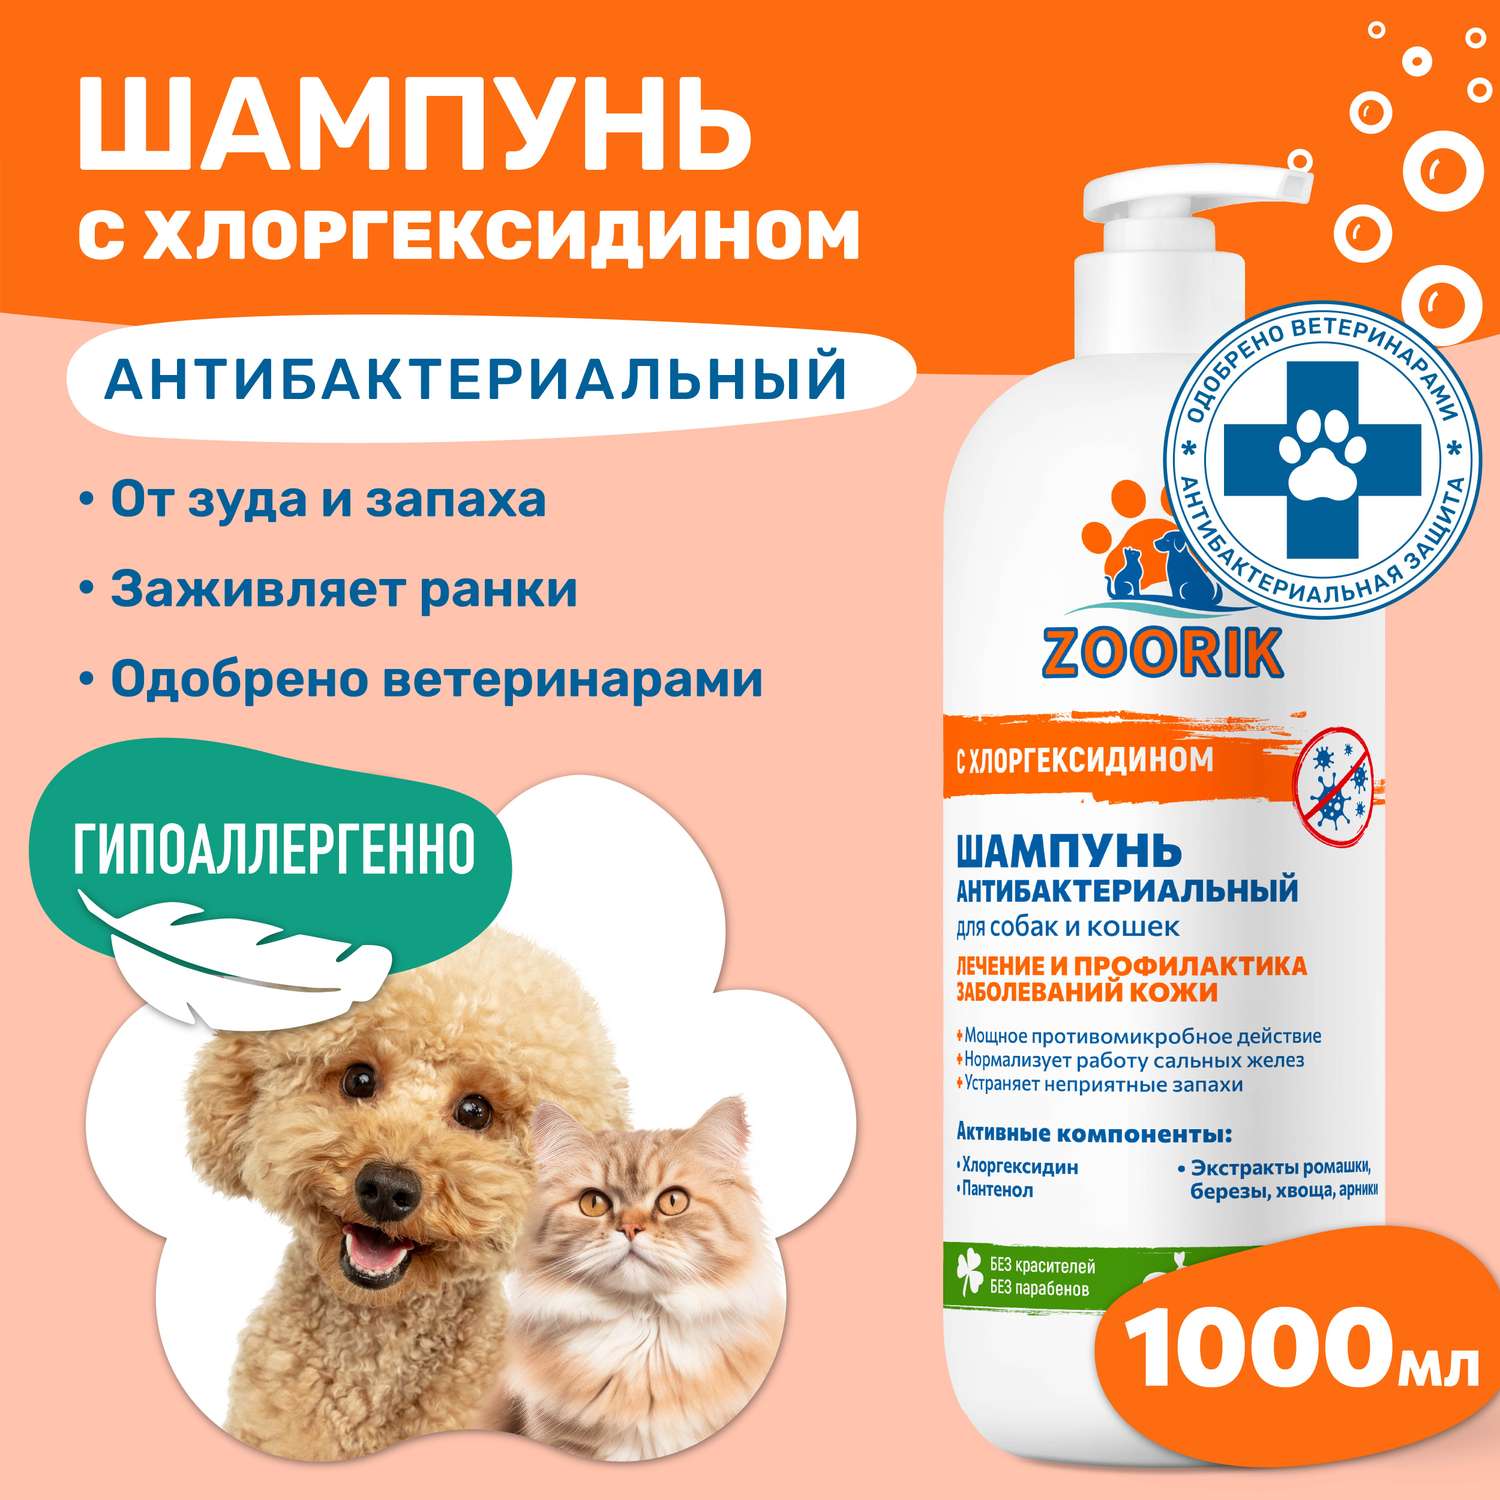 Шампунь для собак и кошек ZOORIK антибактериальный 1000 мл - фото 2